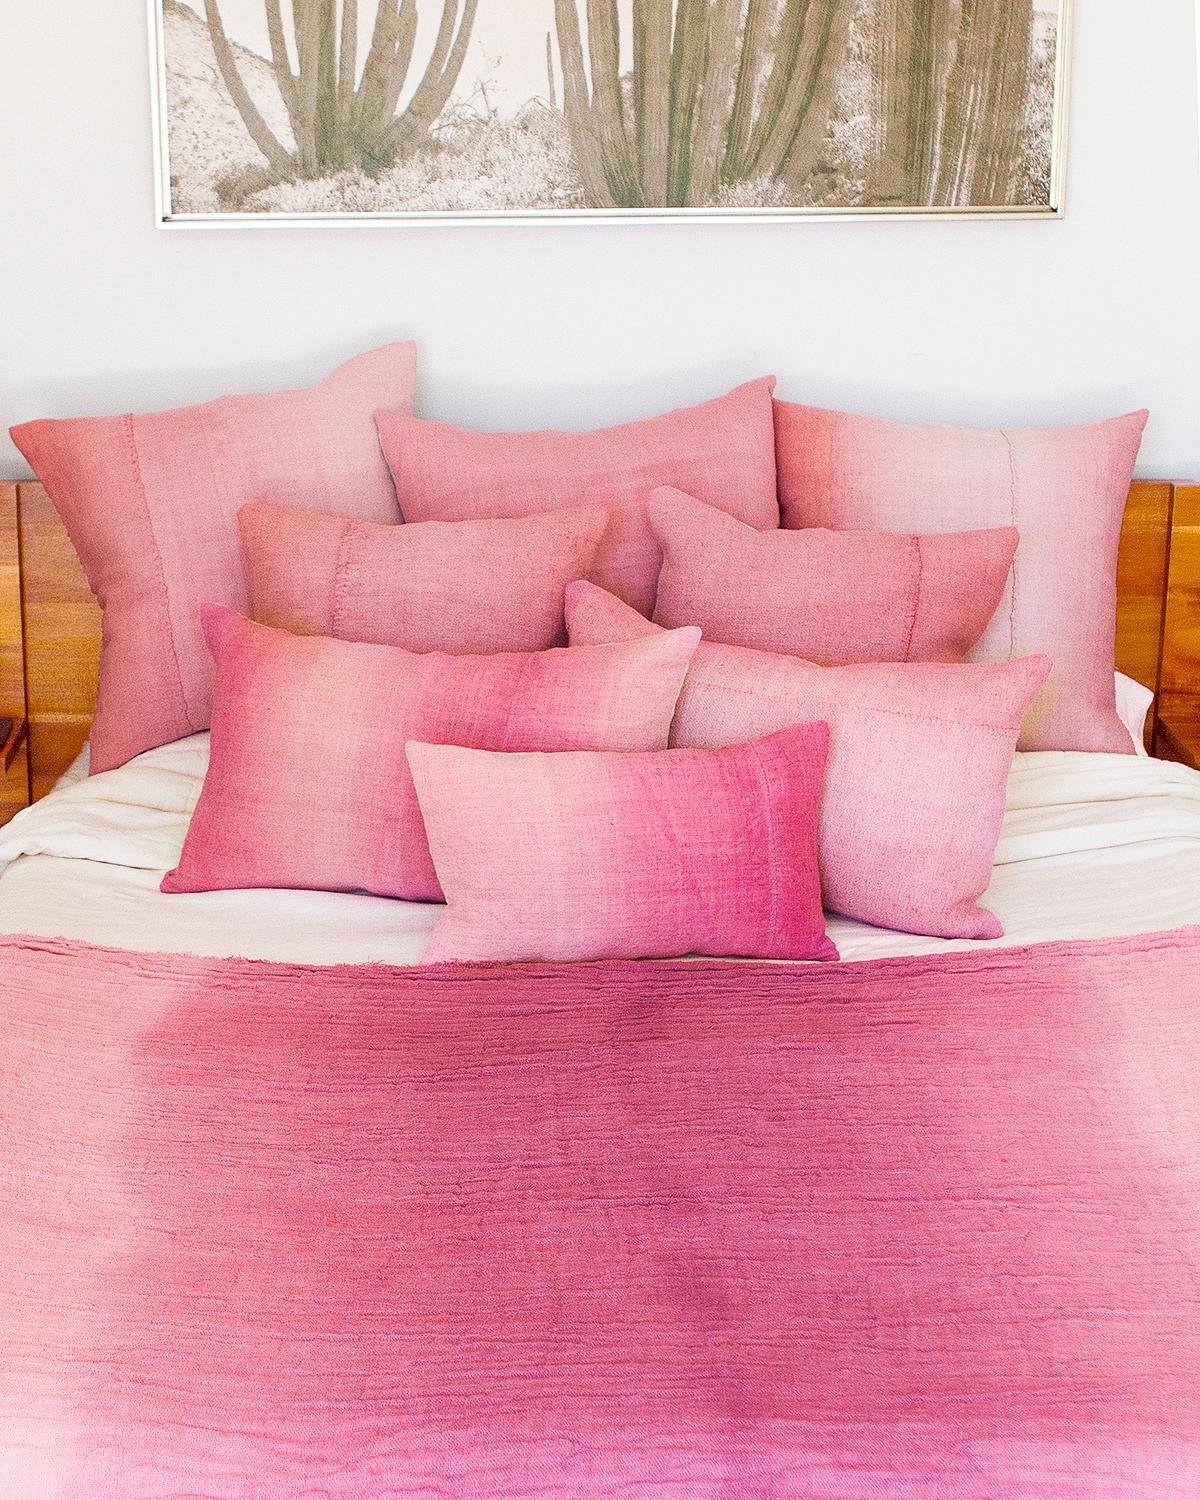 Organique Coussin en lin vintage peint à la main de couleur rose Espanyolet 20